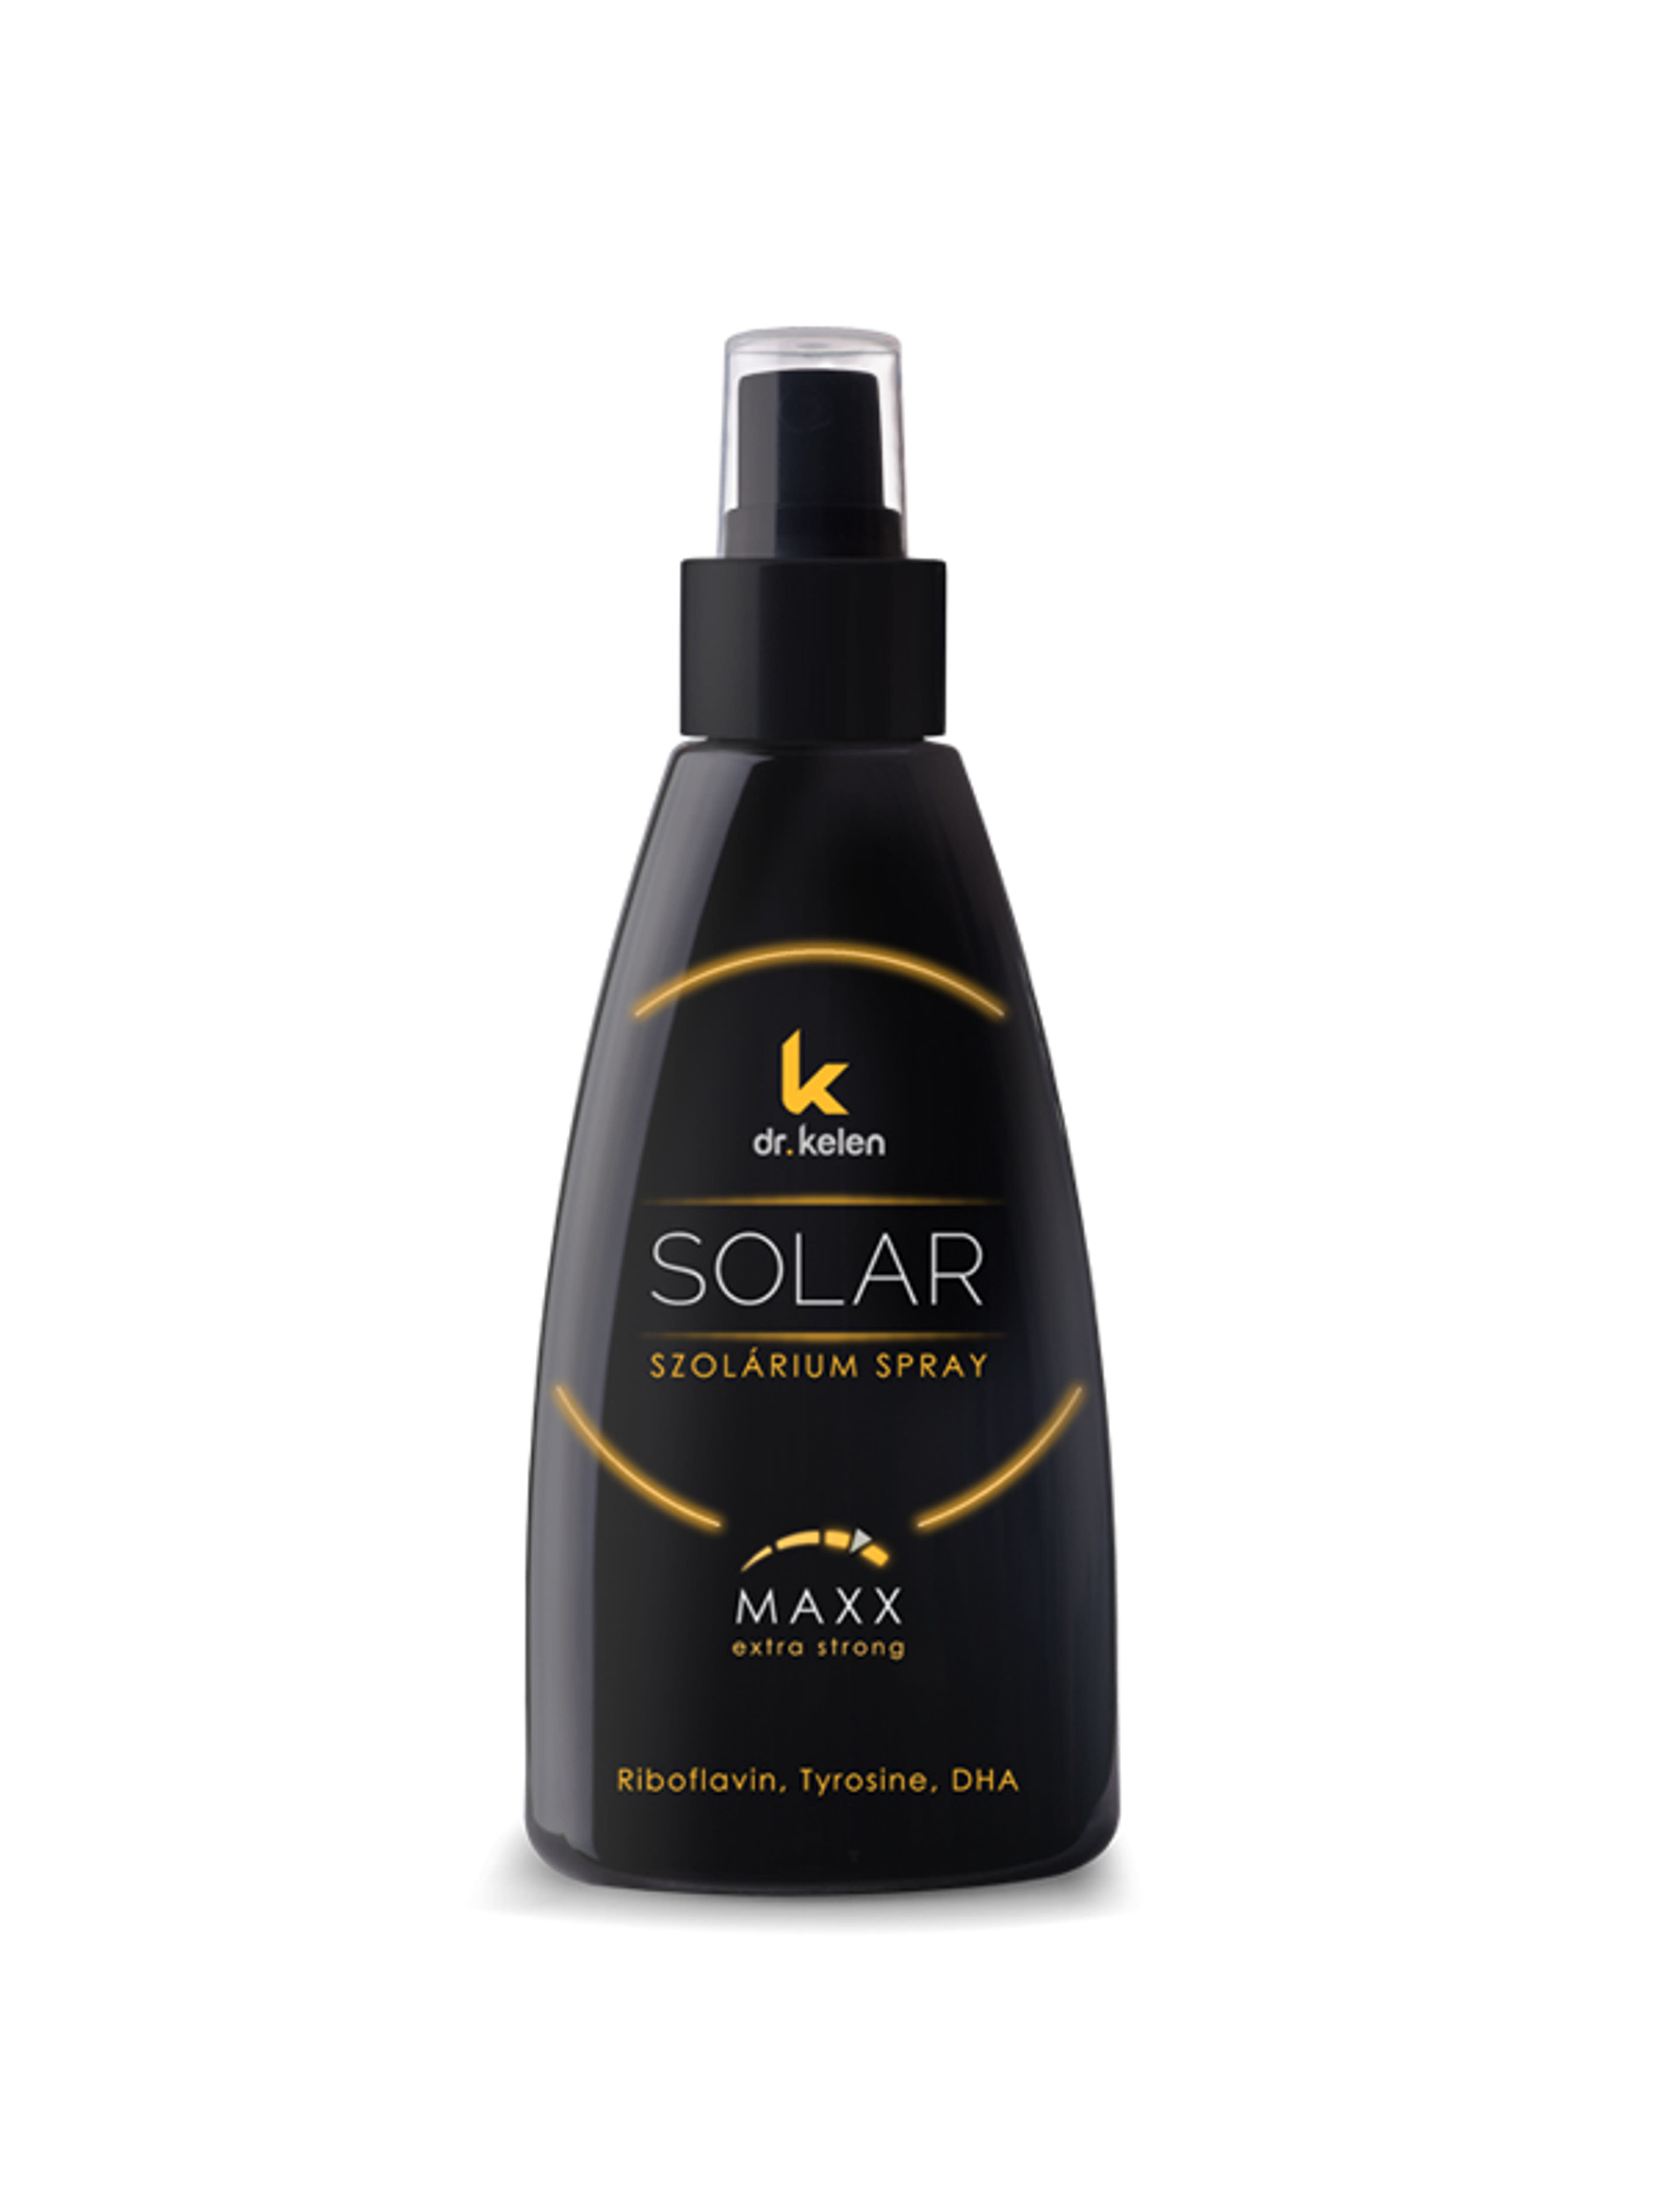 Dr. Kelen sunsolar maxx spray - 150 ml-2